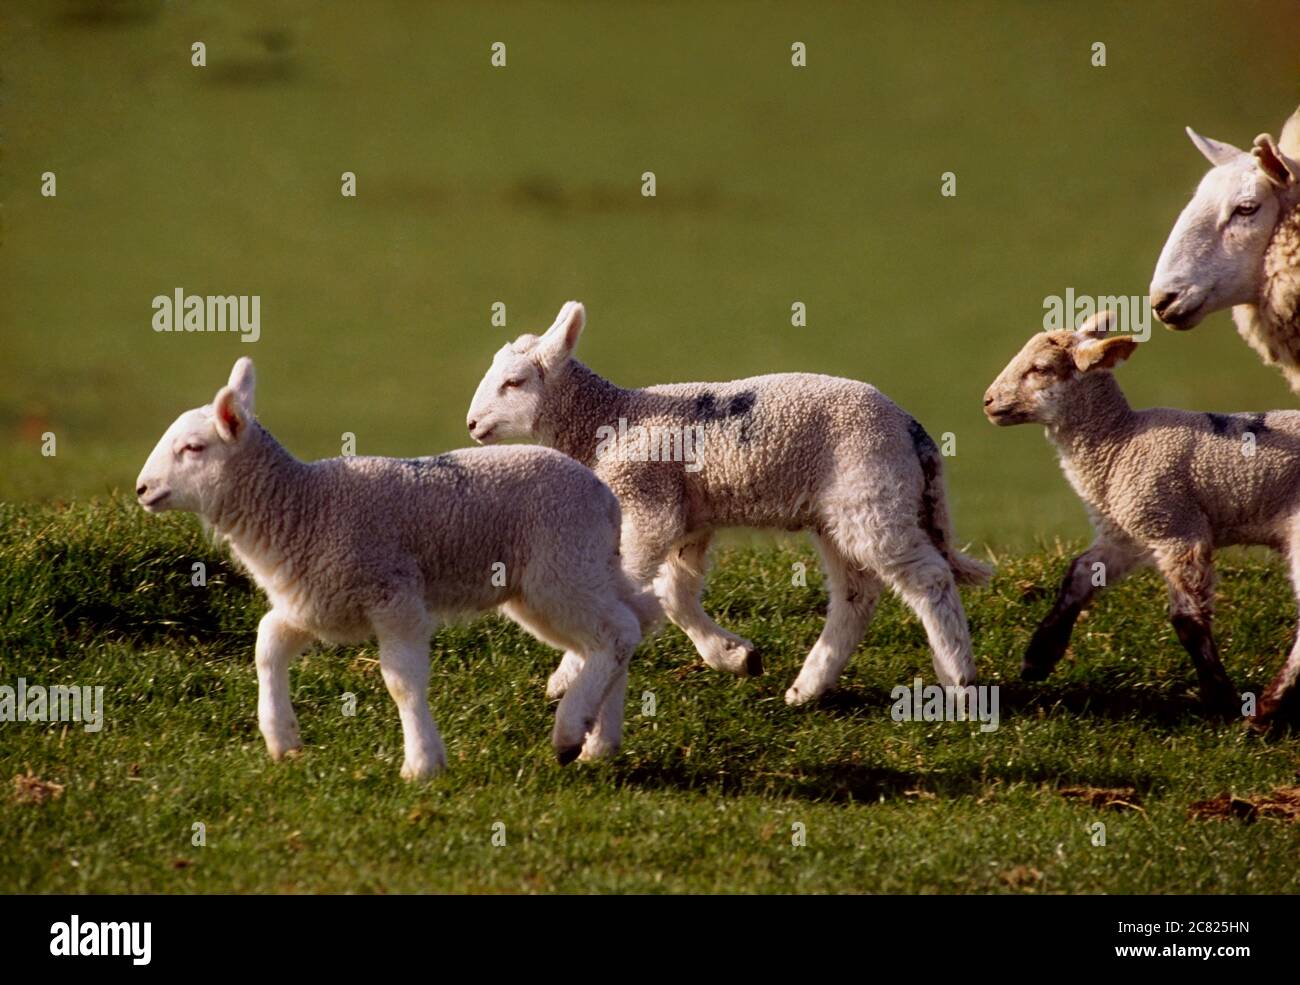 Lambs At Play Stock Photo